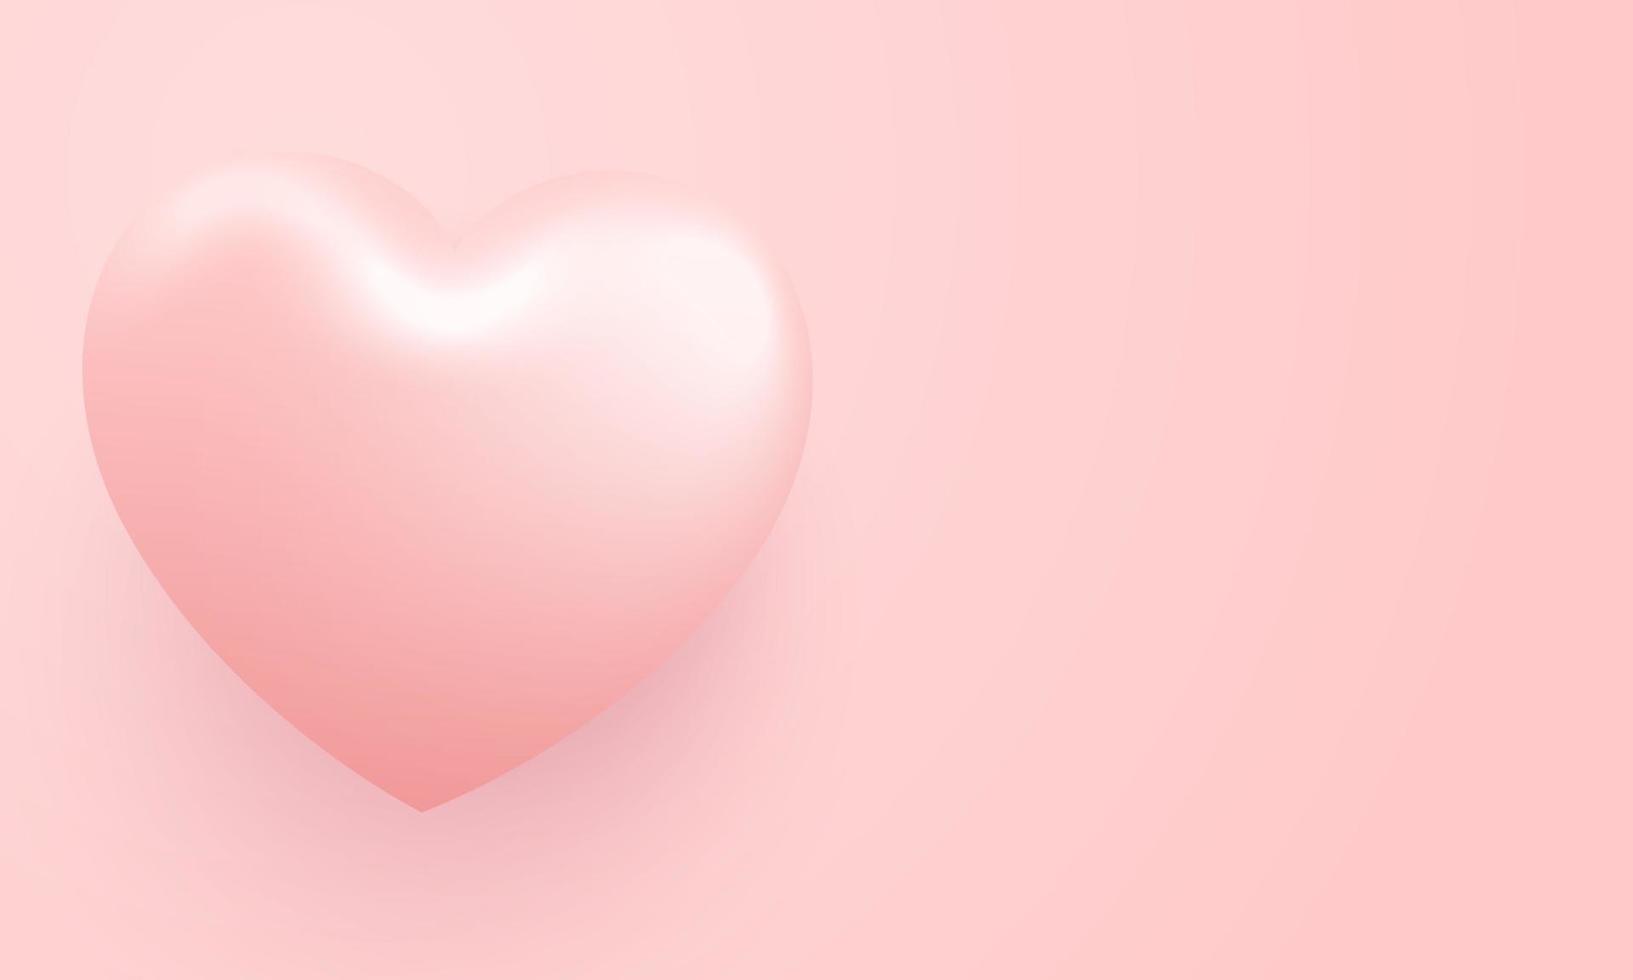 me encanta la ilustración de fondo del día de san valentín feliz. hermoso fondo rosa con un gran corazón realista vector